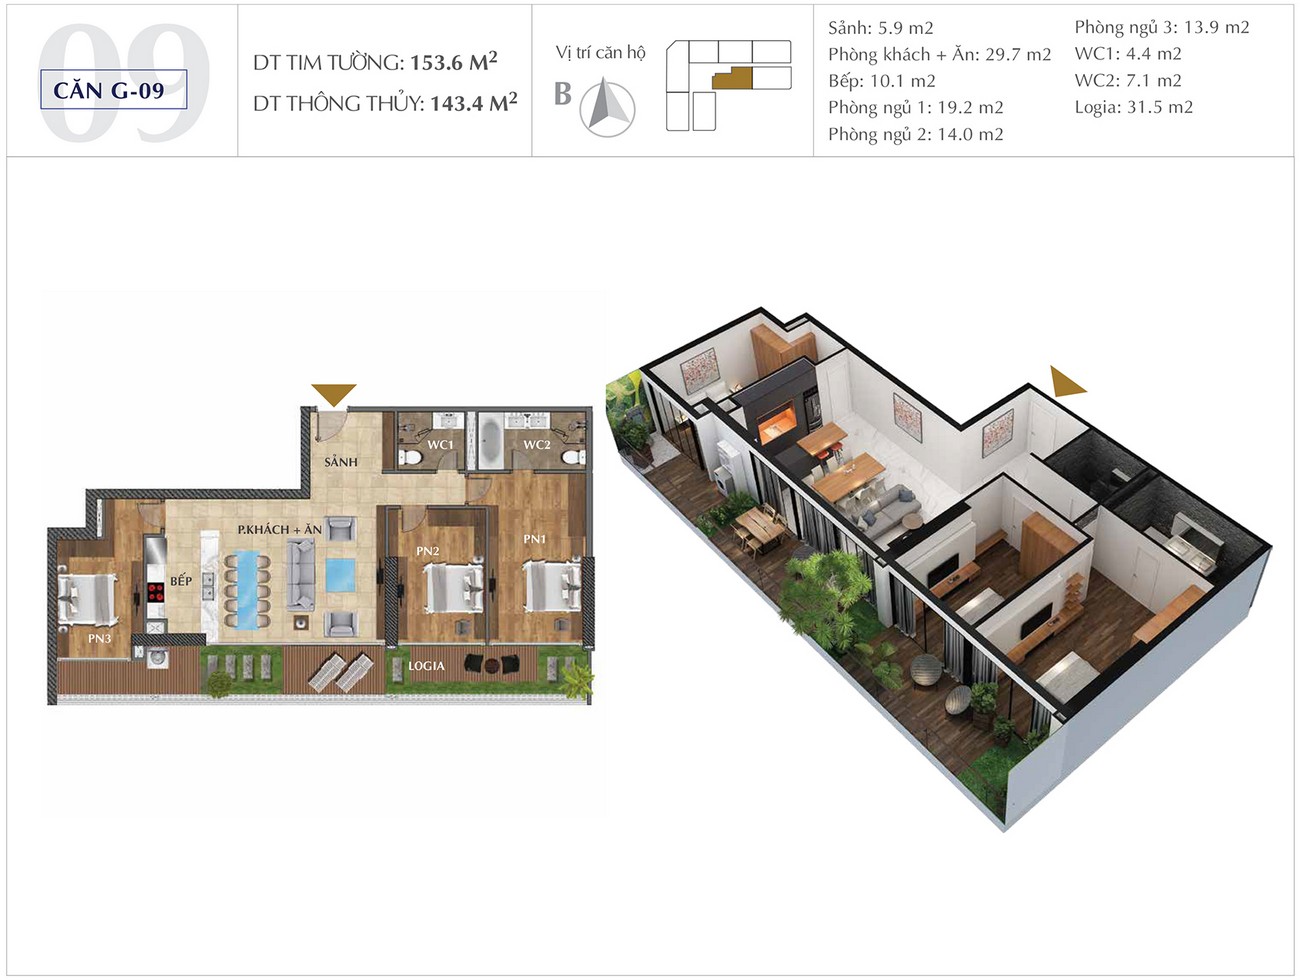 Thiết kế dự án căn hộ chung cư Sunshine Golden River Quận Tây Hồ KĐT Ciputra chủ đầu tư Sunshine Group